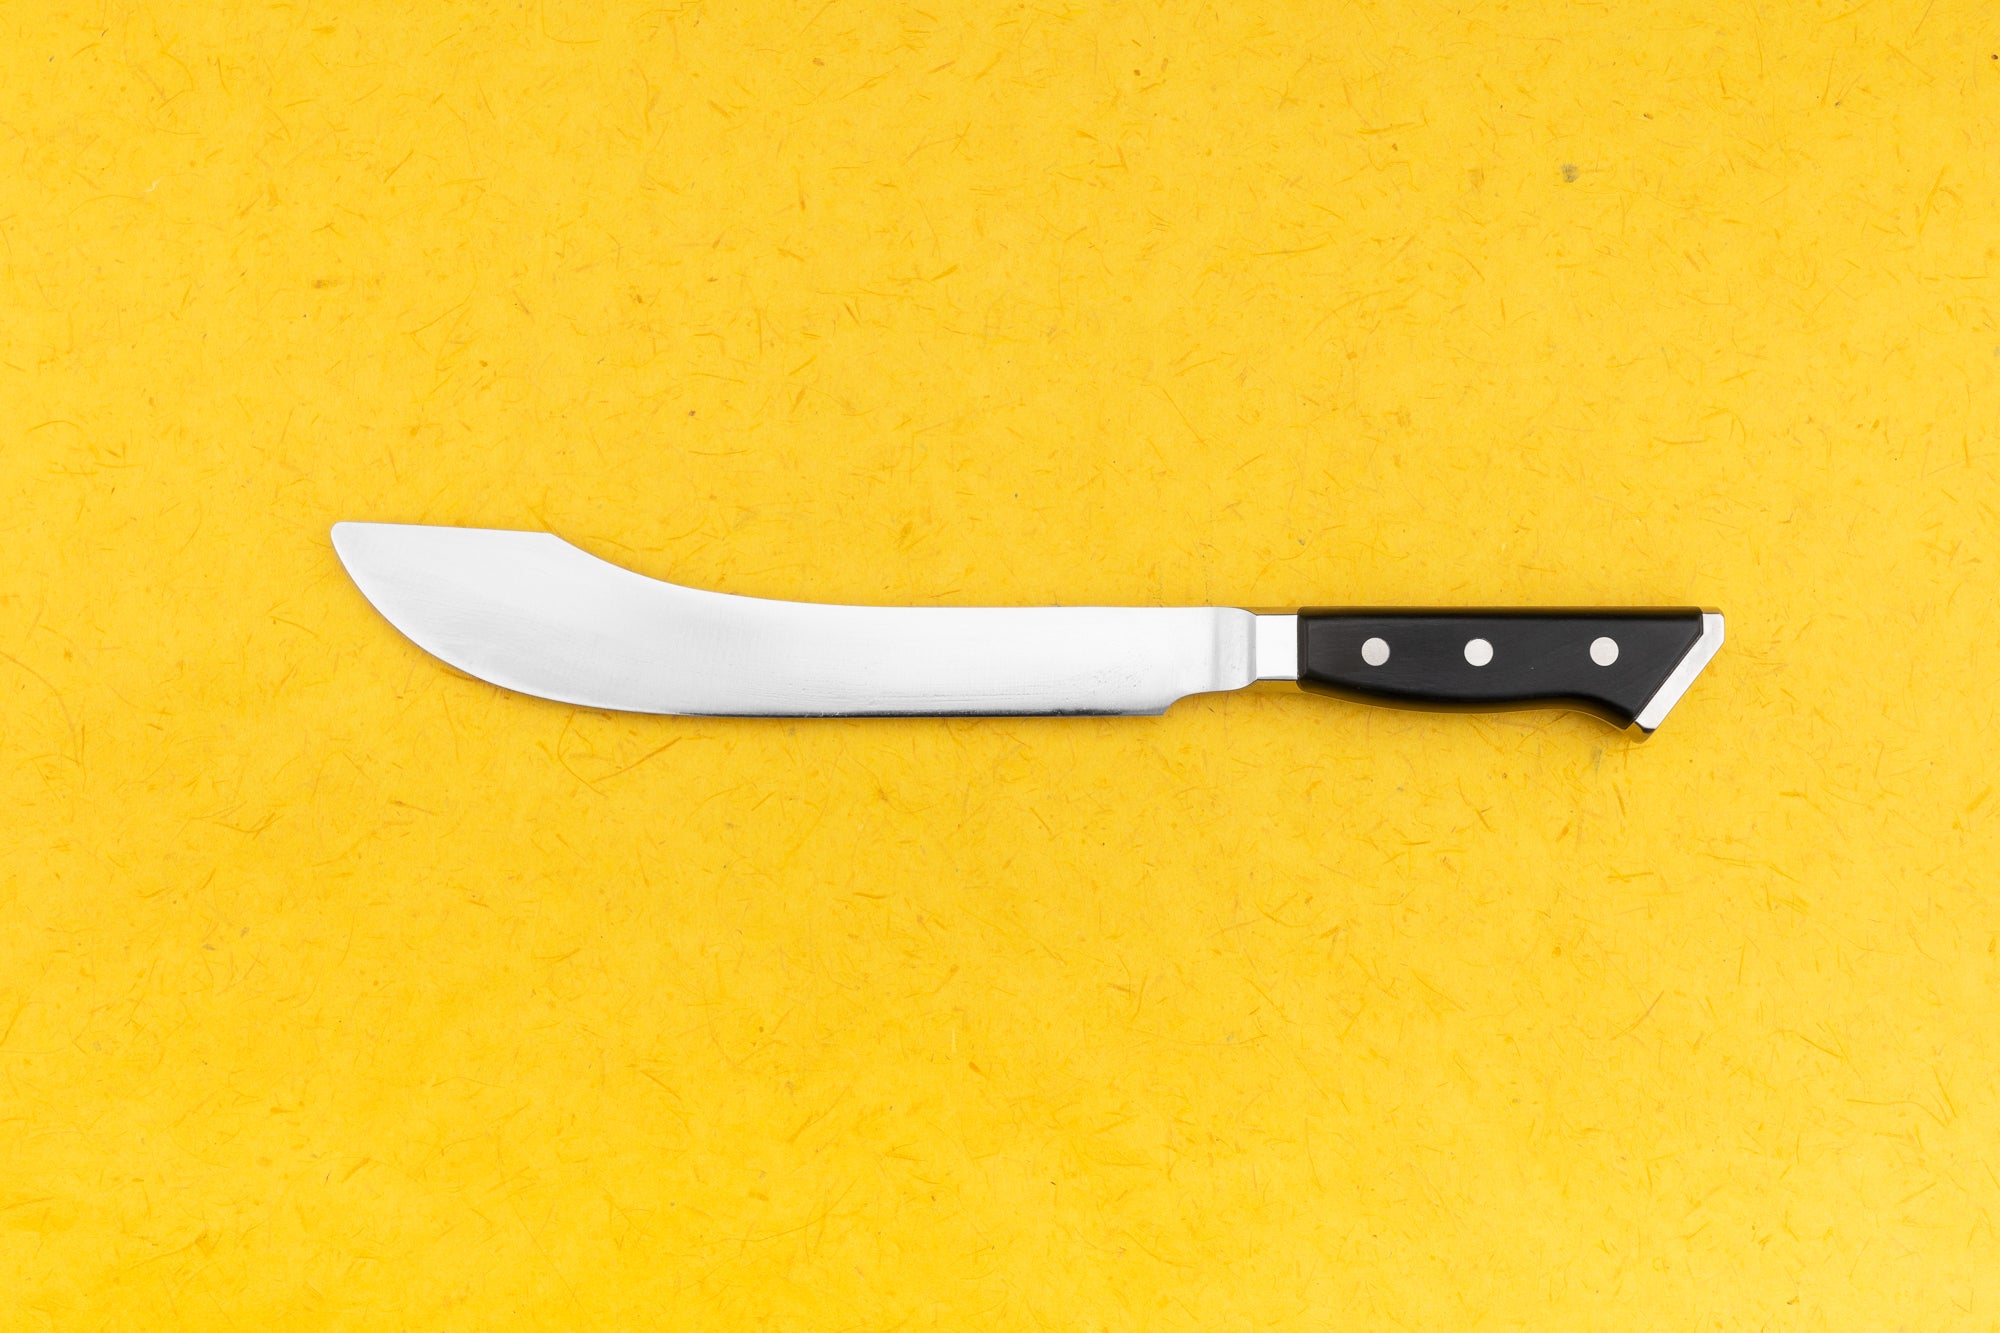 Glestain K-series Carving Knife 220mm